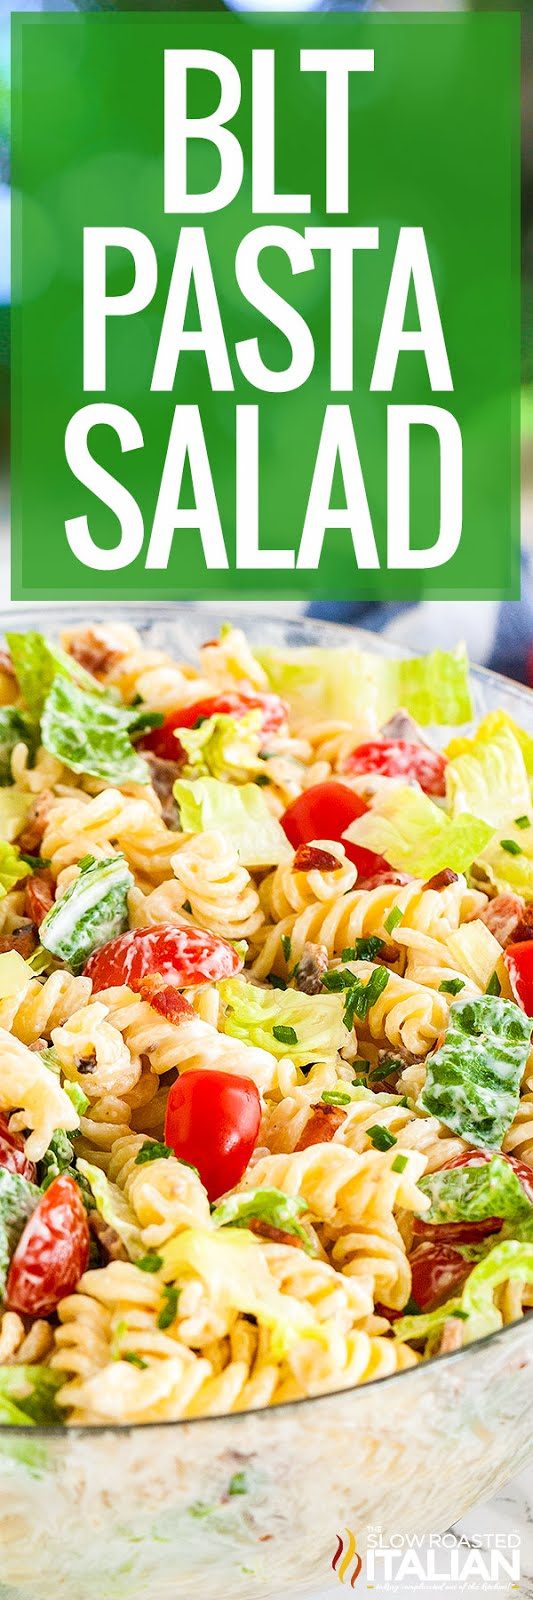 titled image for blt pasta salad